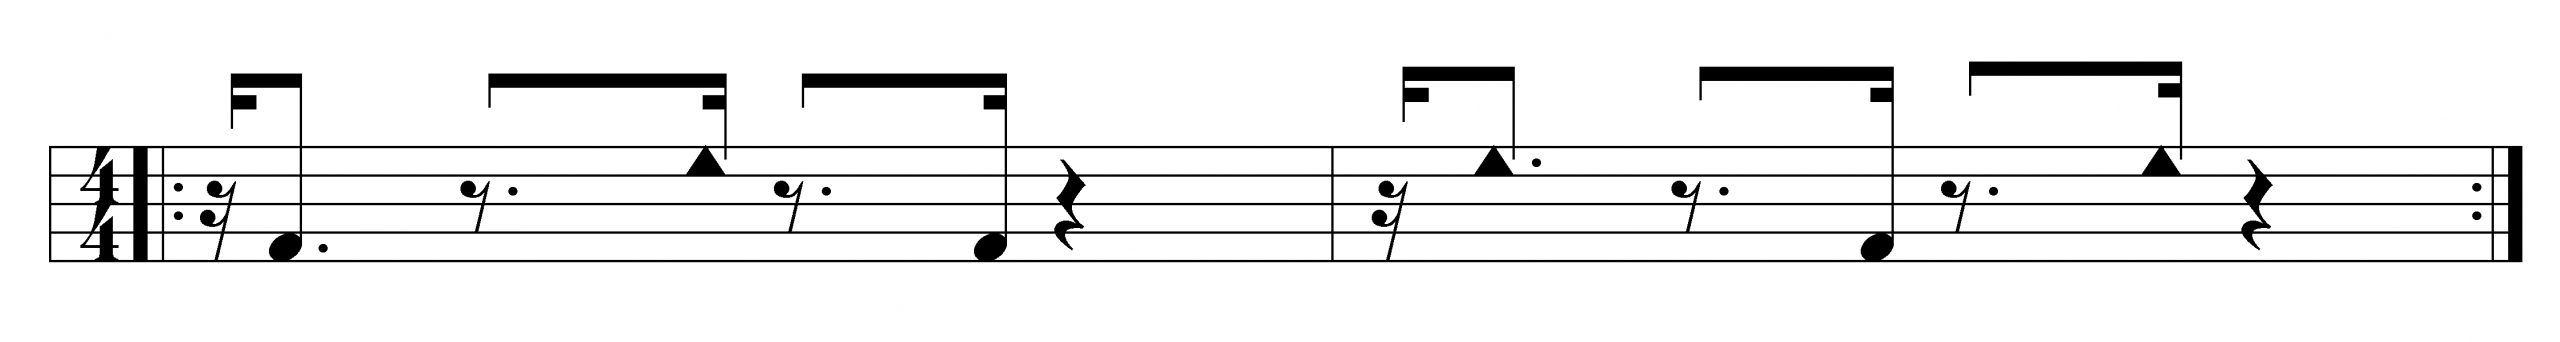 редкая форма базового квинто в стиле Матансас для ямбу и гуагуанко. Первый такт - тон-шлеп-тон, а второй - наоборот: шлеп-тон-шлеп. Обычные нотные головки обозначают открытые тона, а треугольные - шлепки.